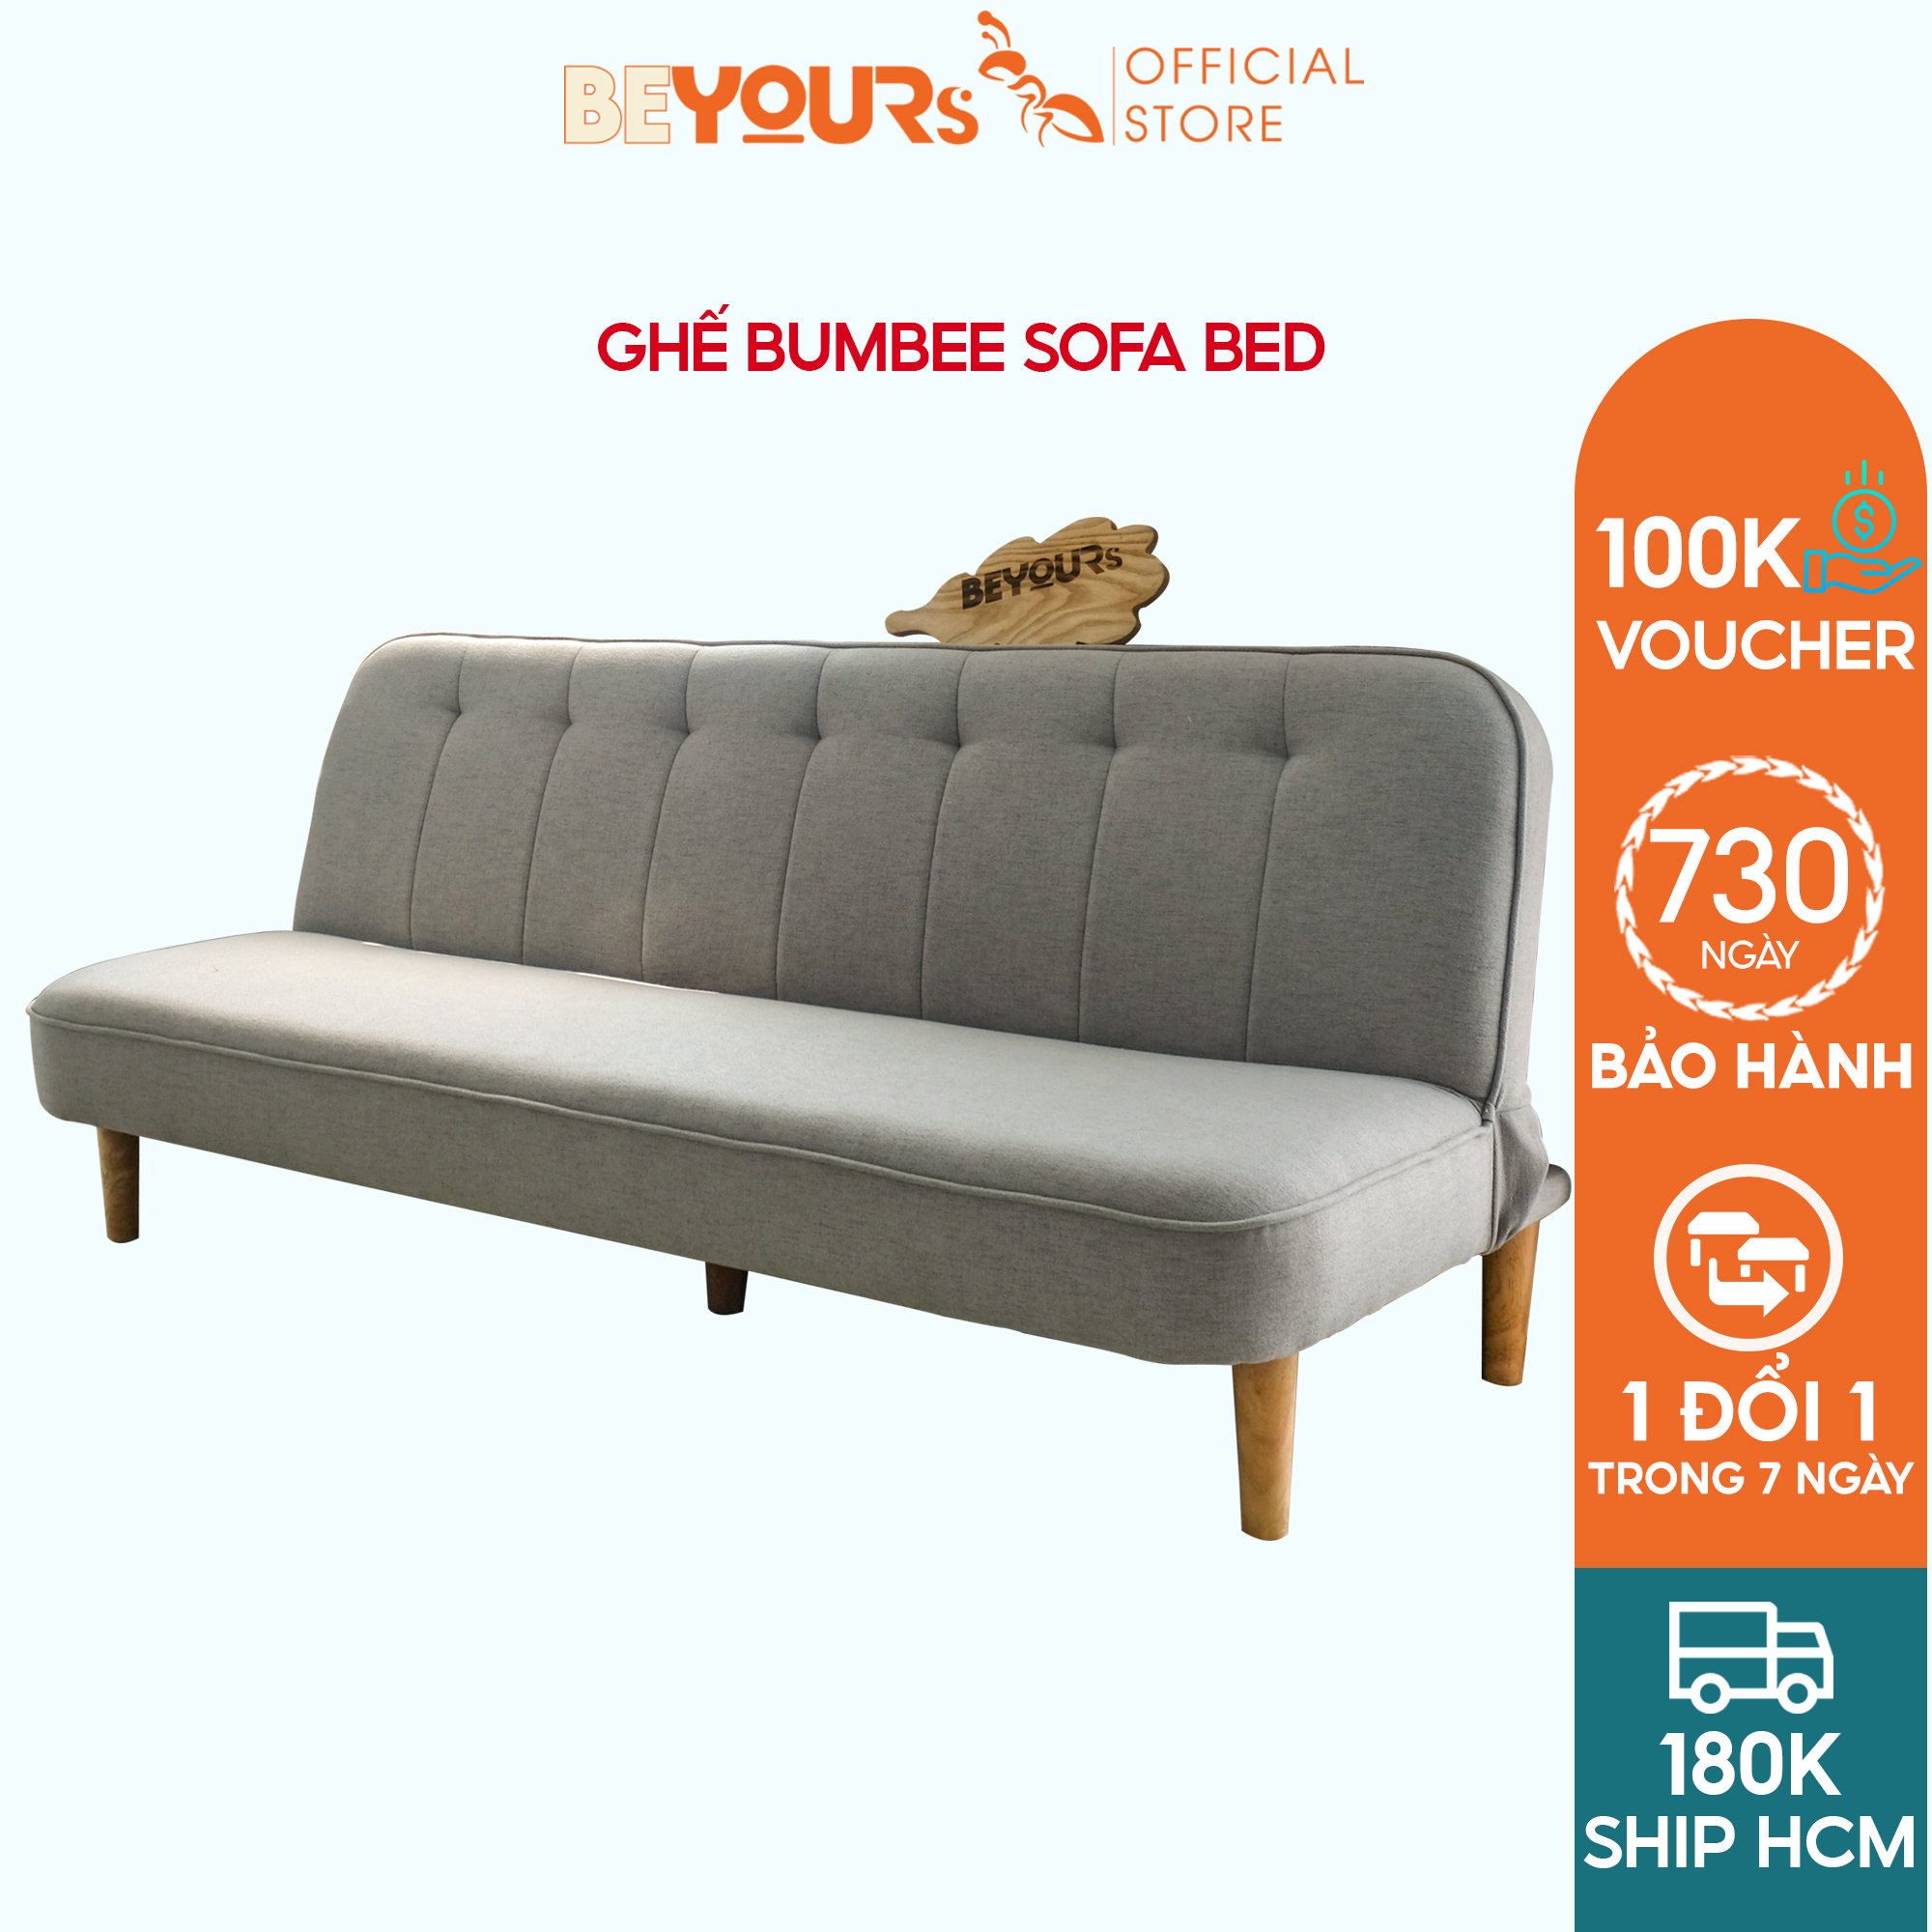 Ghế Sofa Giường Vải Thông Minh BEYOURs Bumbee Sofa Bed Vải Đa Năng Nội Thất Phòng Khách